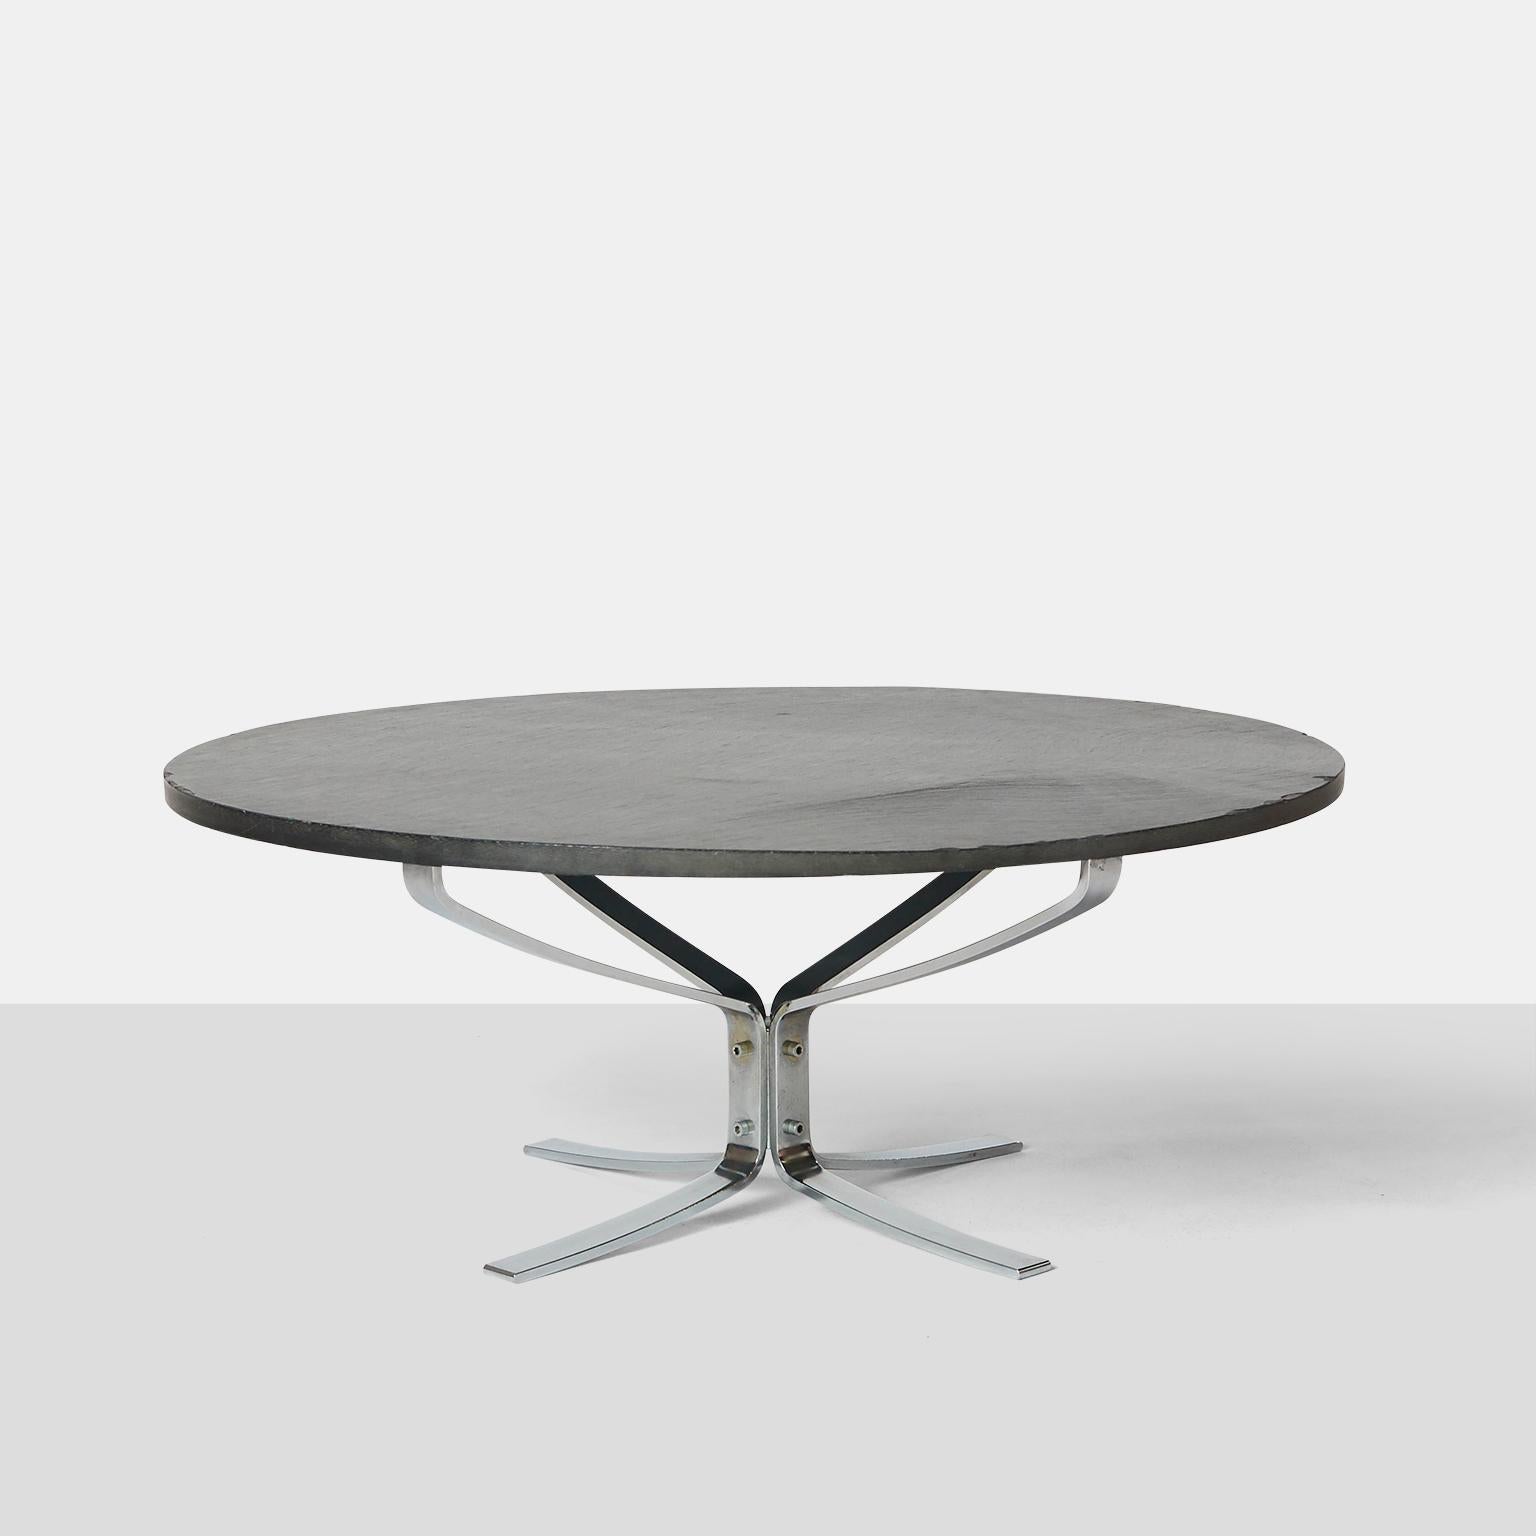 Une table basse de la série Falcon en chrome et ardoise conçue par Sigurd Ressell. Conçu vers 1961 pour Vatne Mobler.